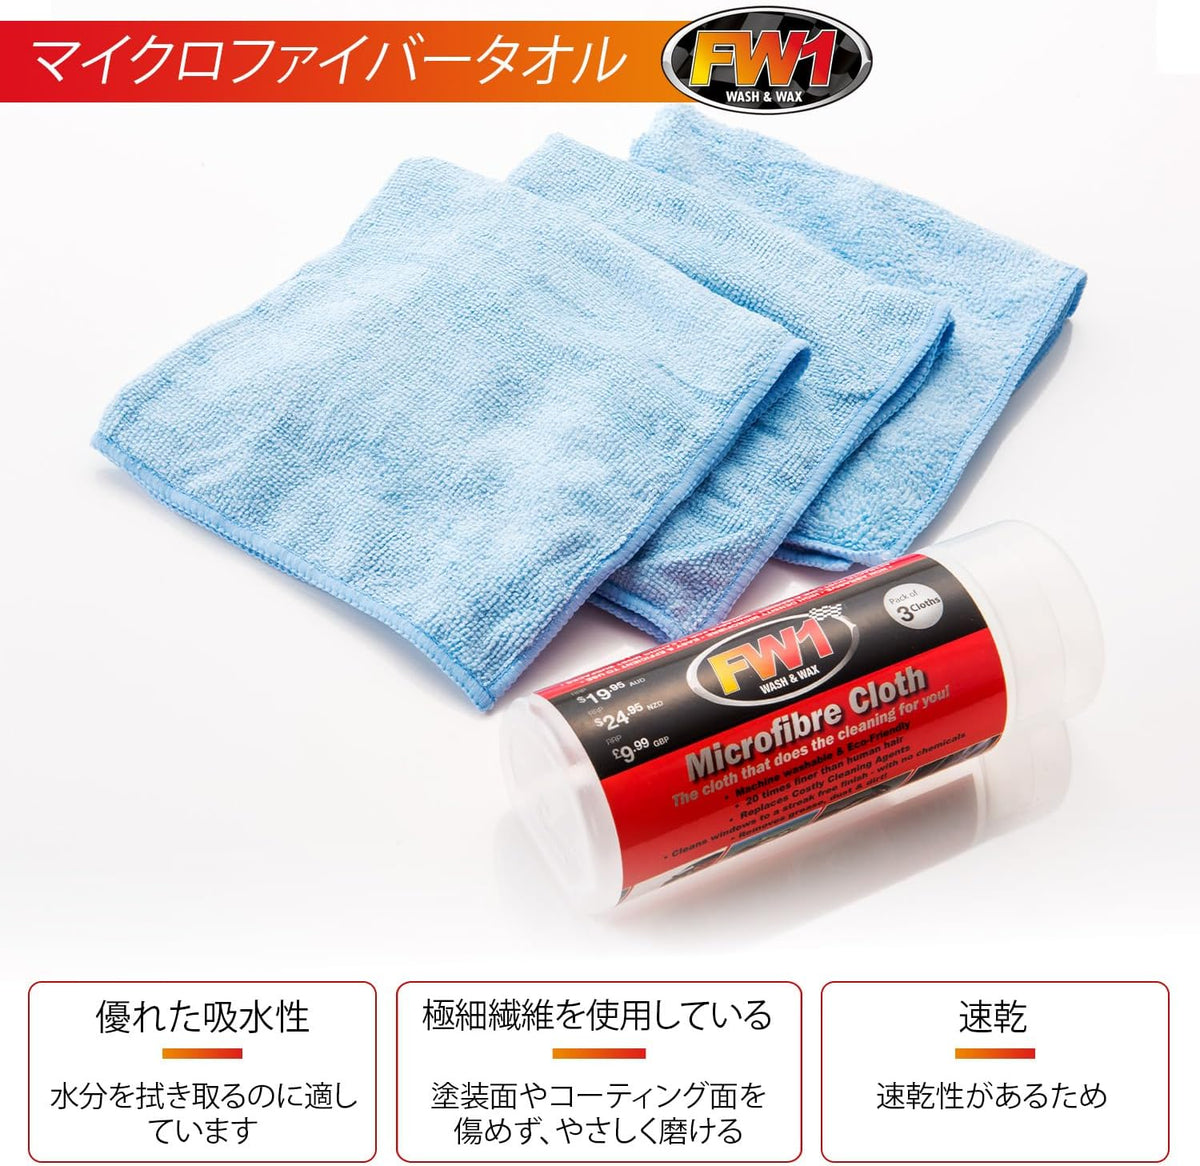 fw1 car wax microfiber towels